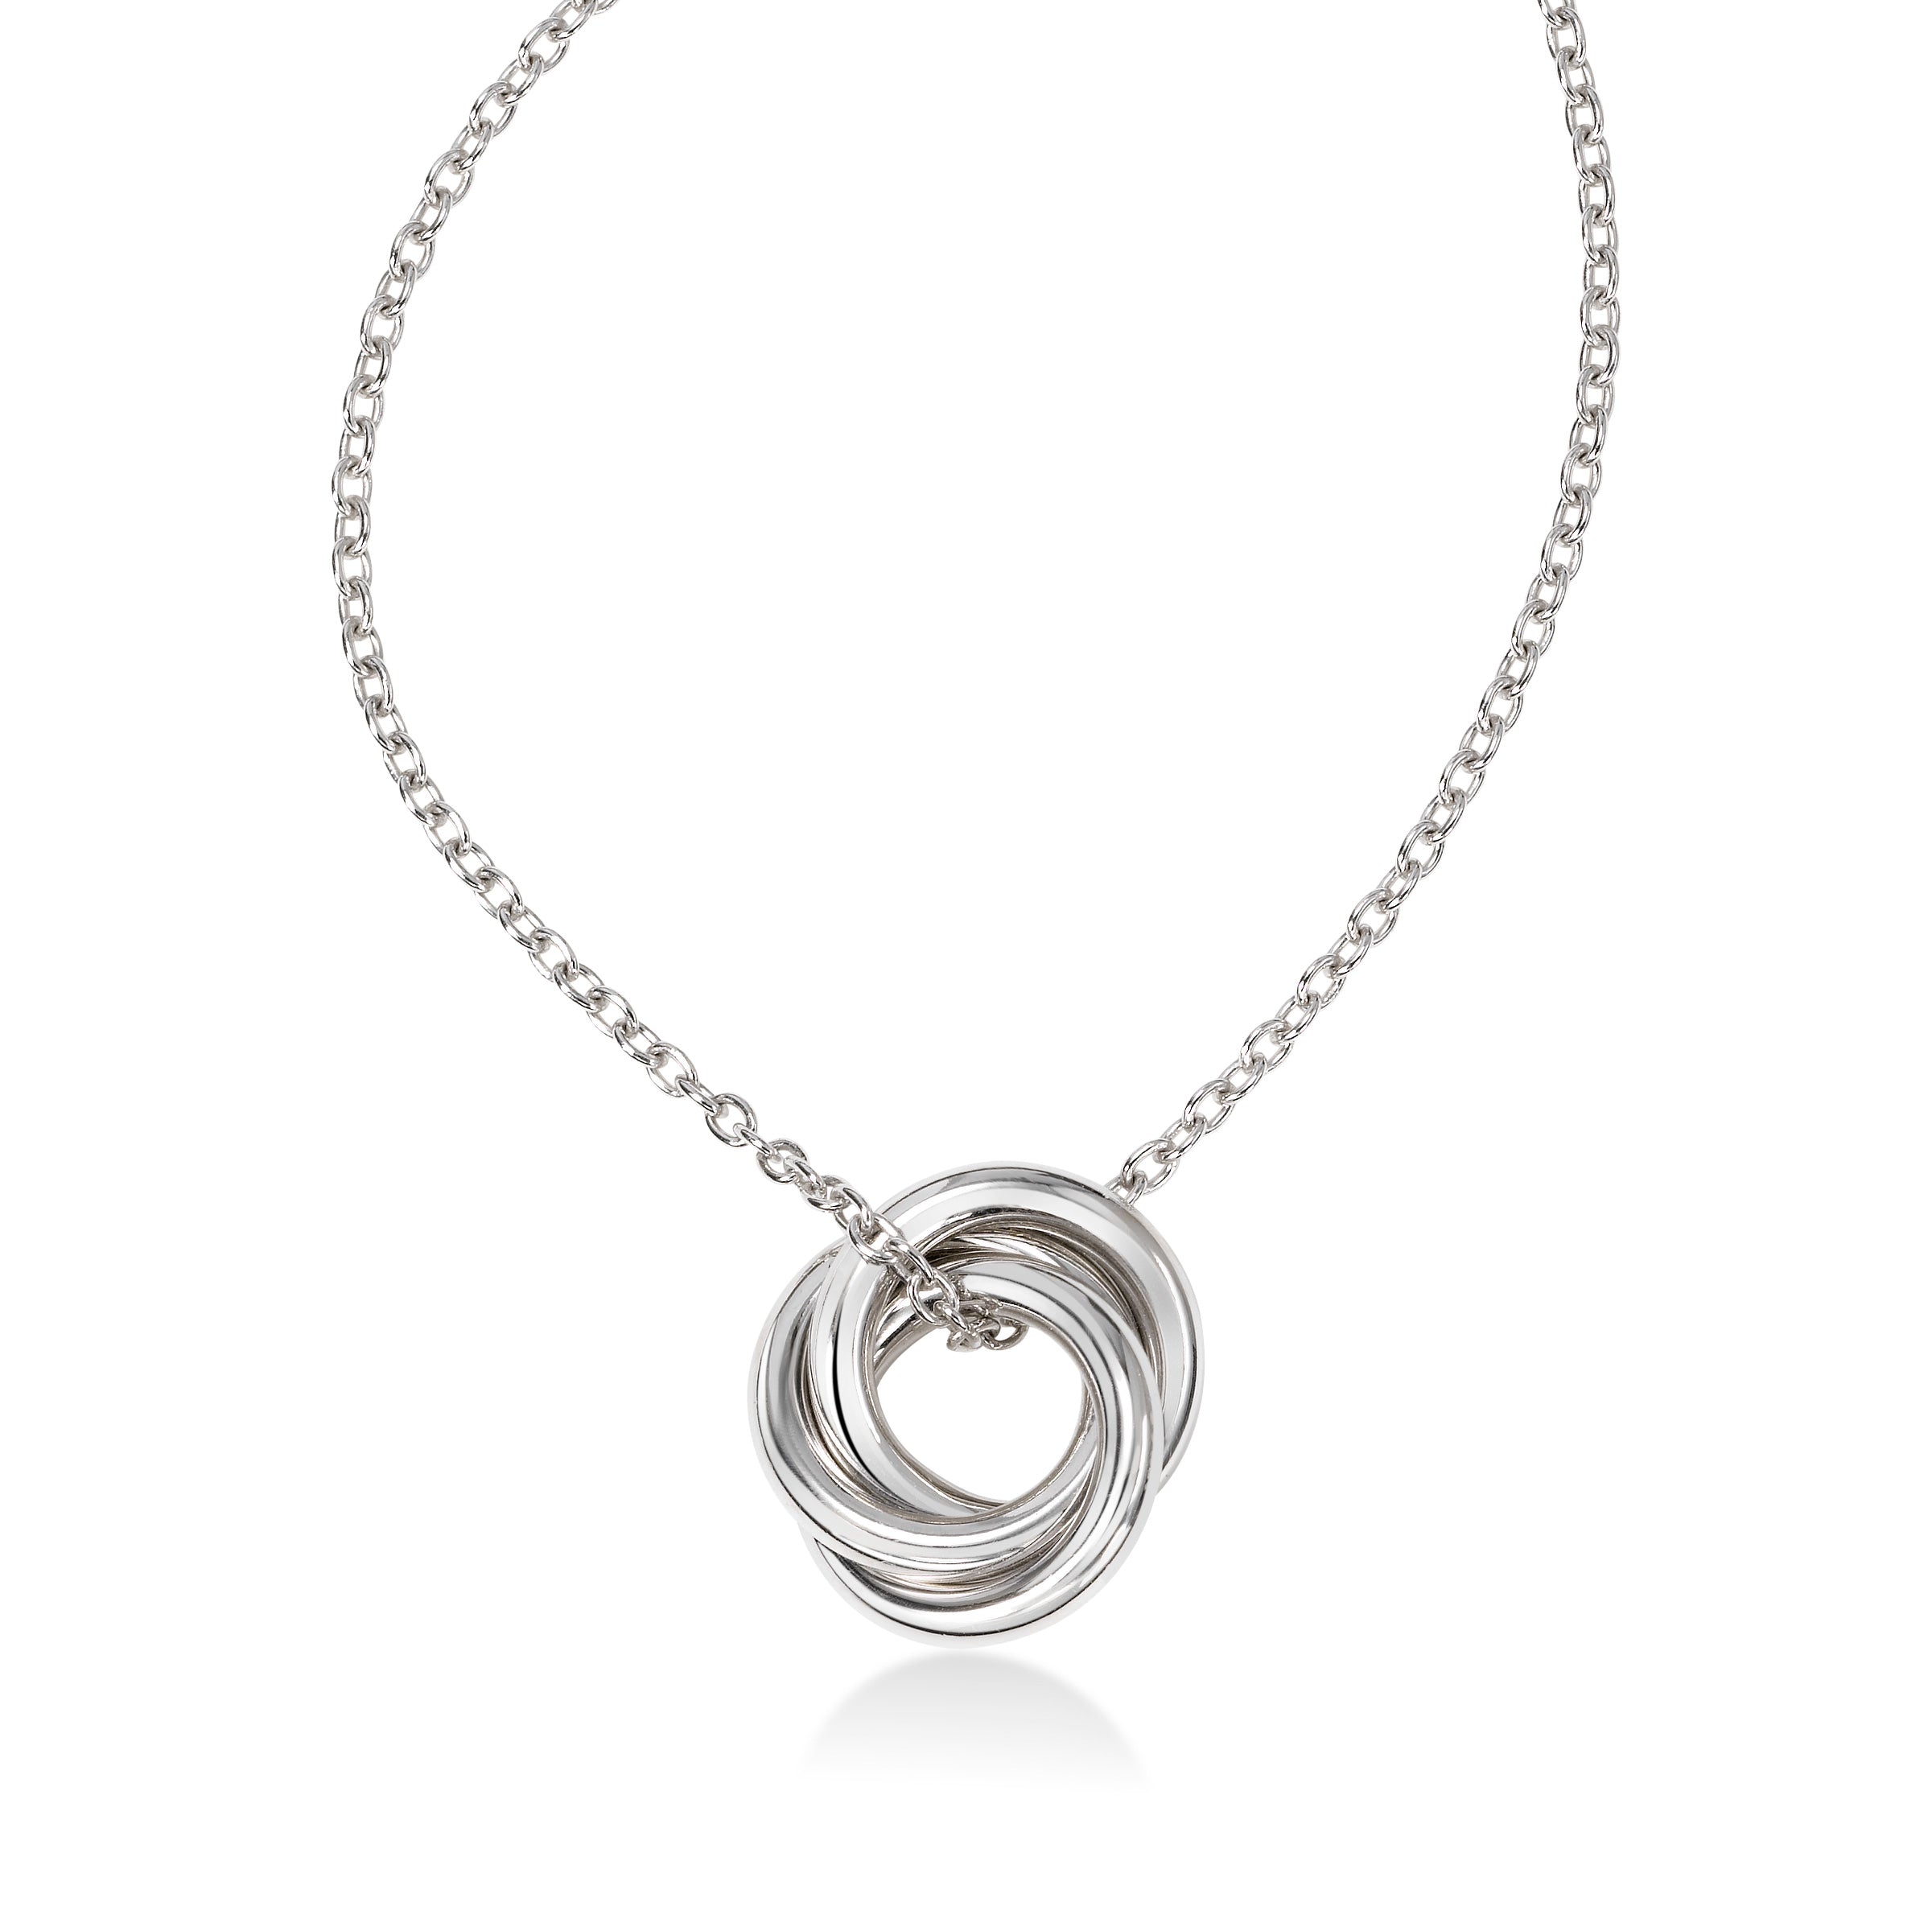 Jilco Diamond Love Knot Necklace 925 Sterling Silver 18